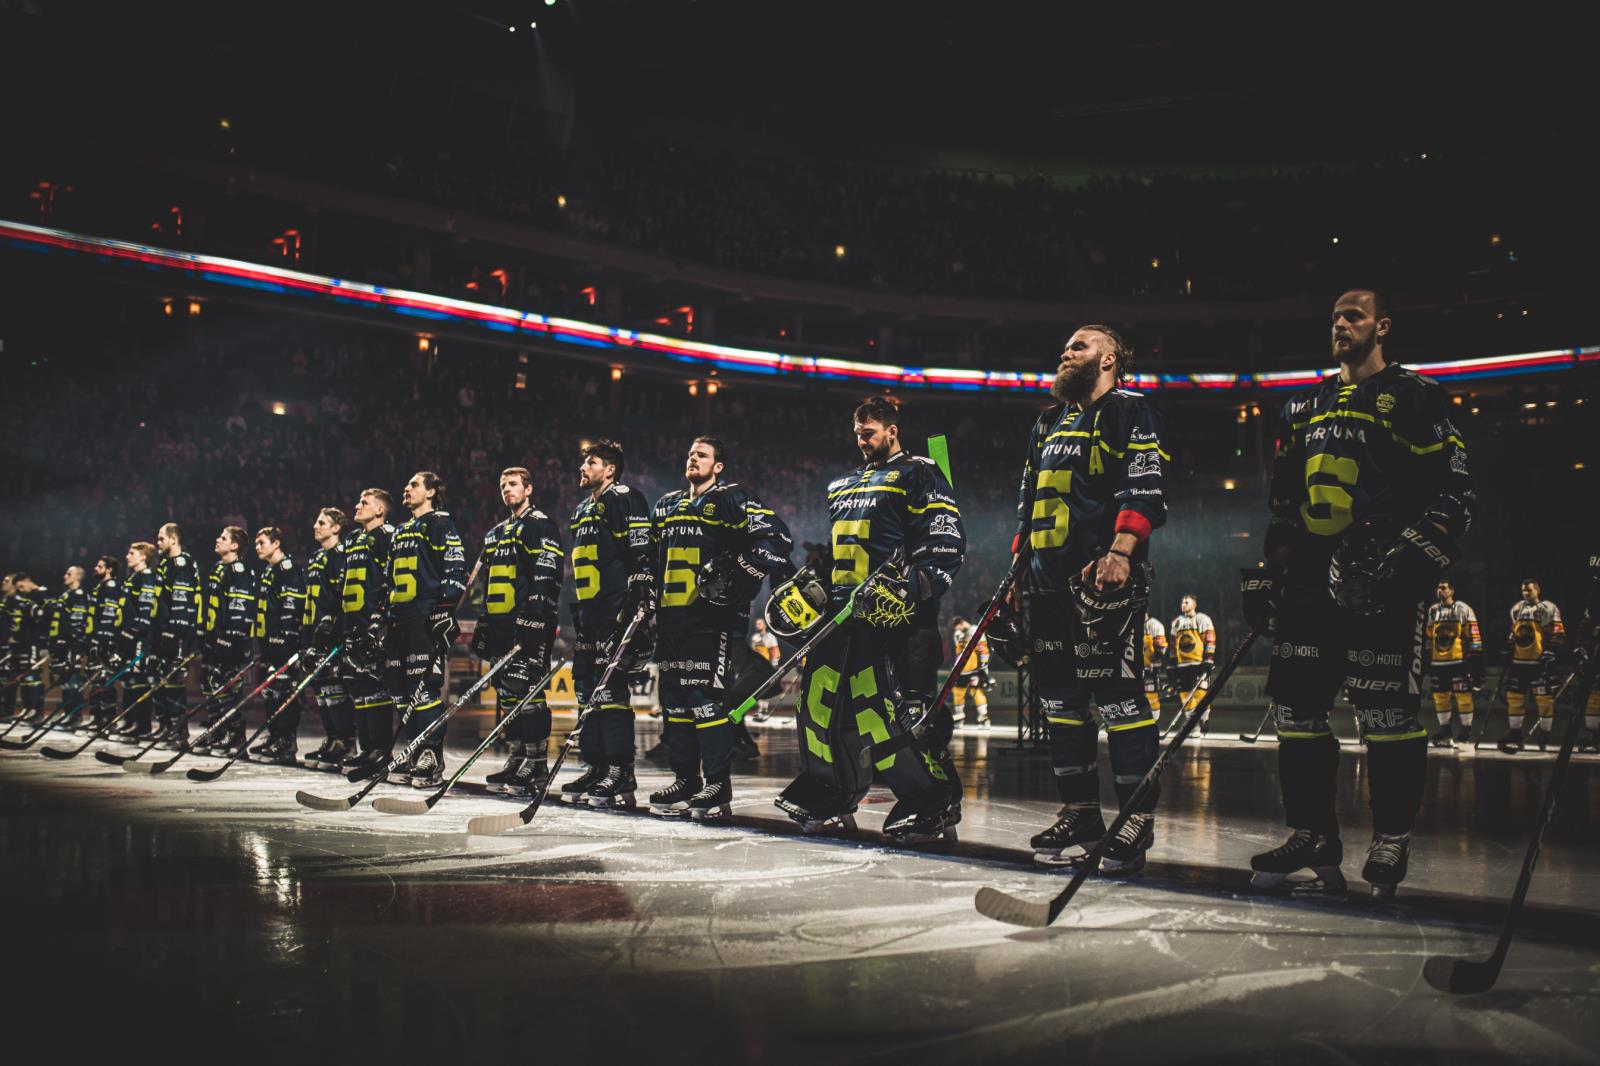 Hokejisti HC Sparta Praha nastoupení na ledu.jpg